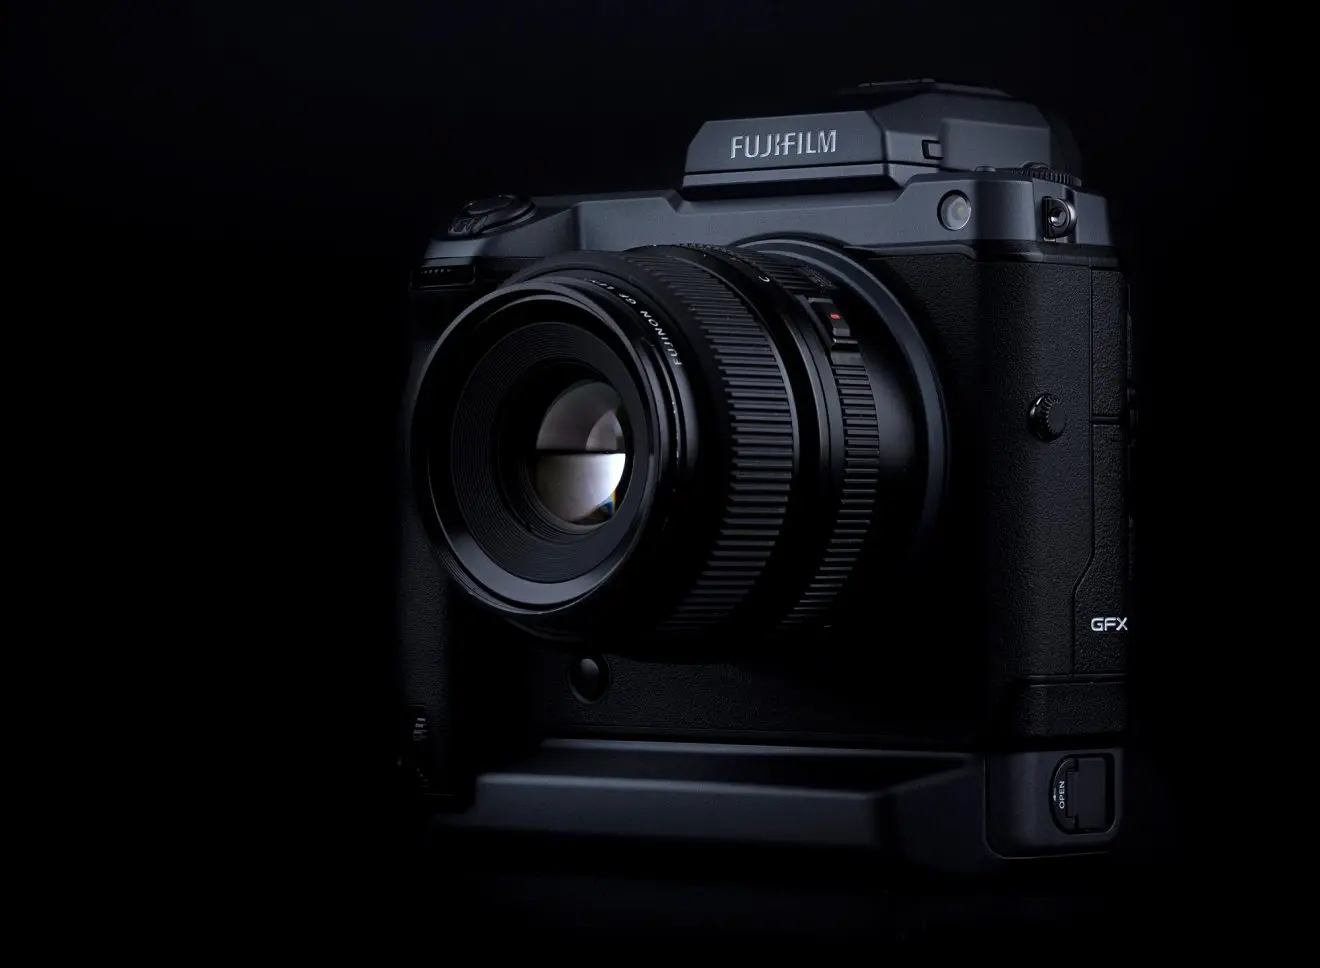 Foto a 400 megapixel. Fujifilm introduce il Pixel Shift Multi-Shot sulla GFX 100